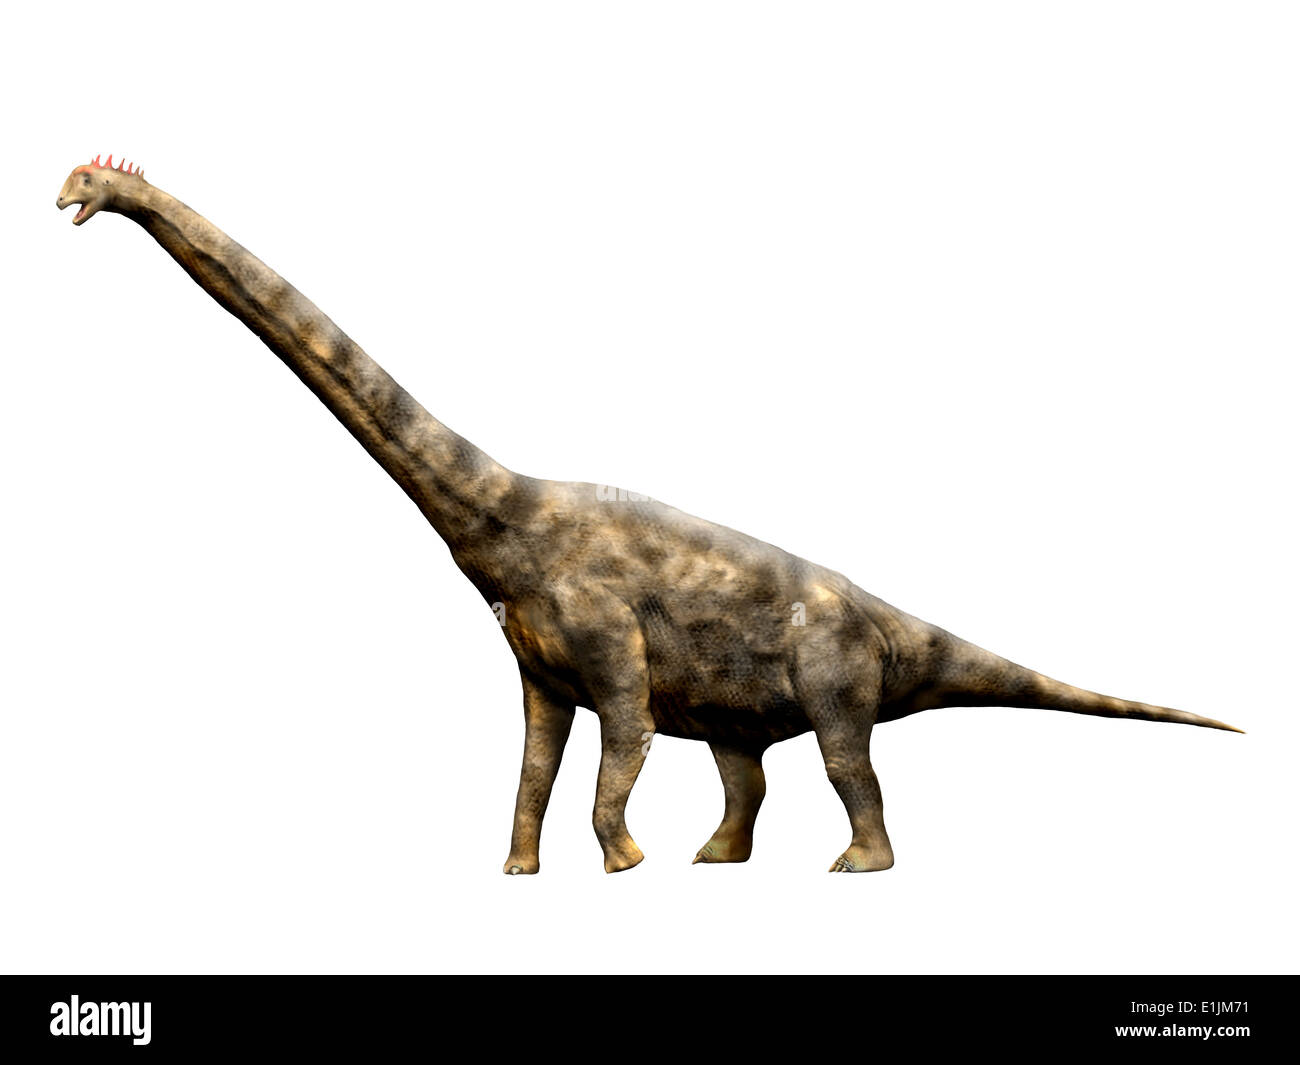 Brachiosaurus dinosaur, white background. Stock Photo